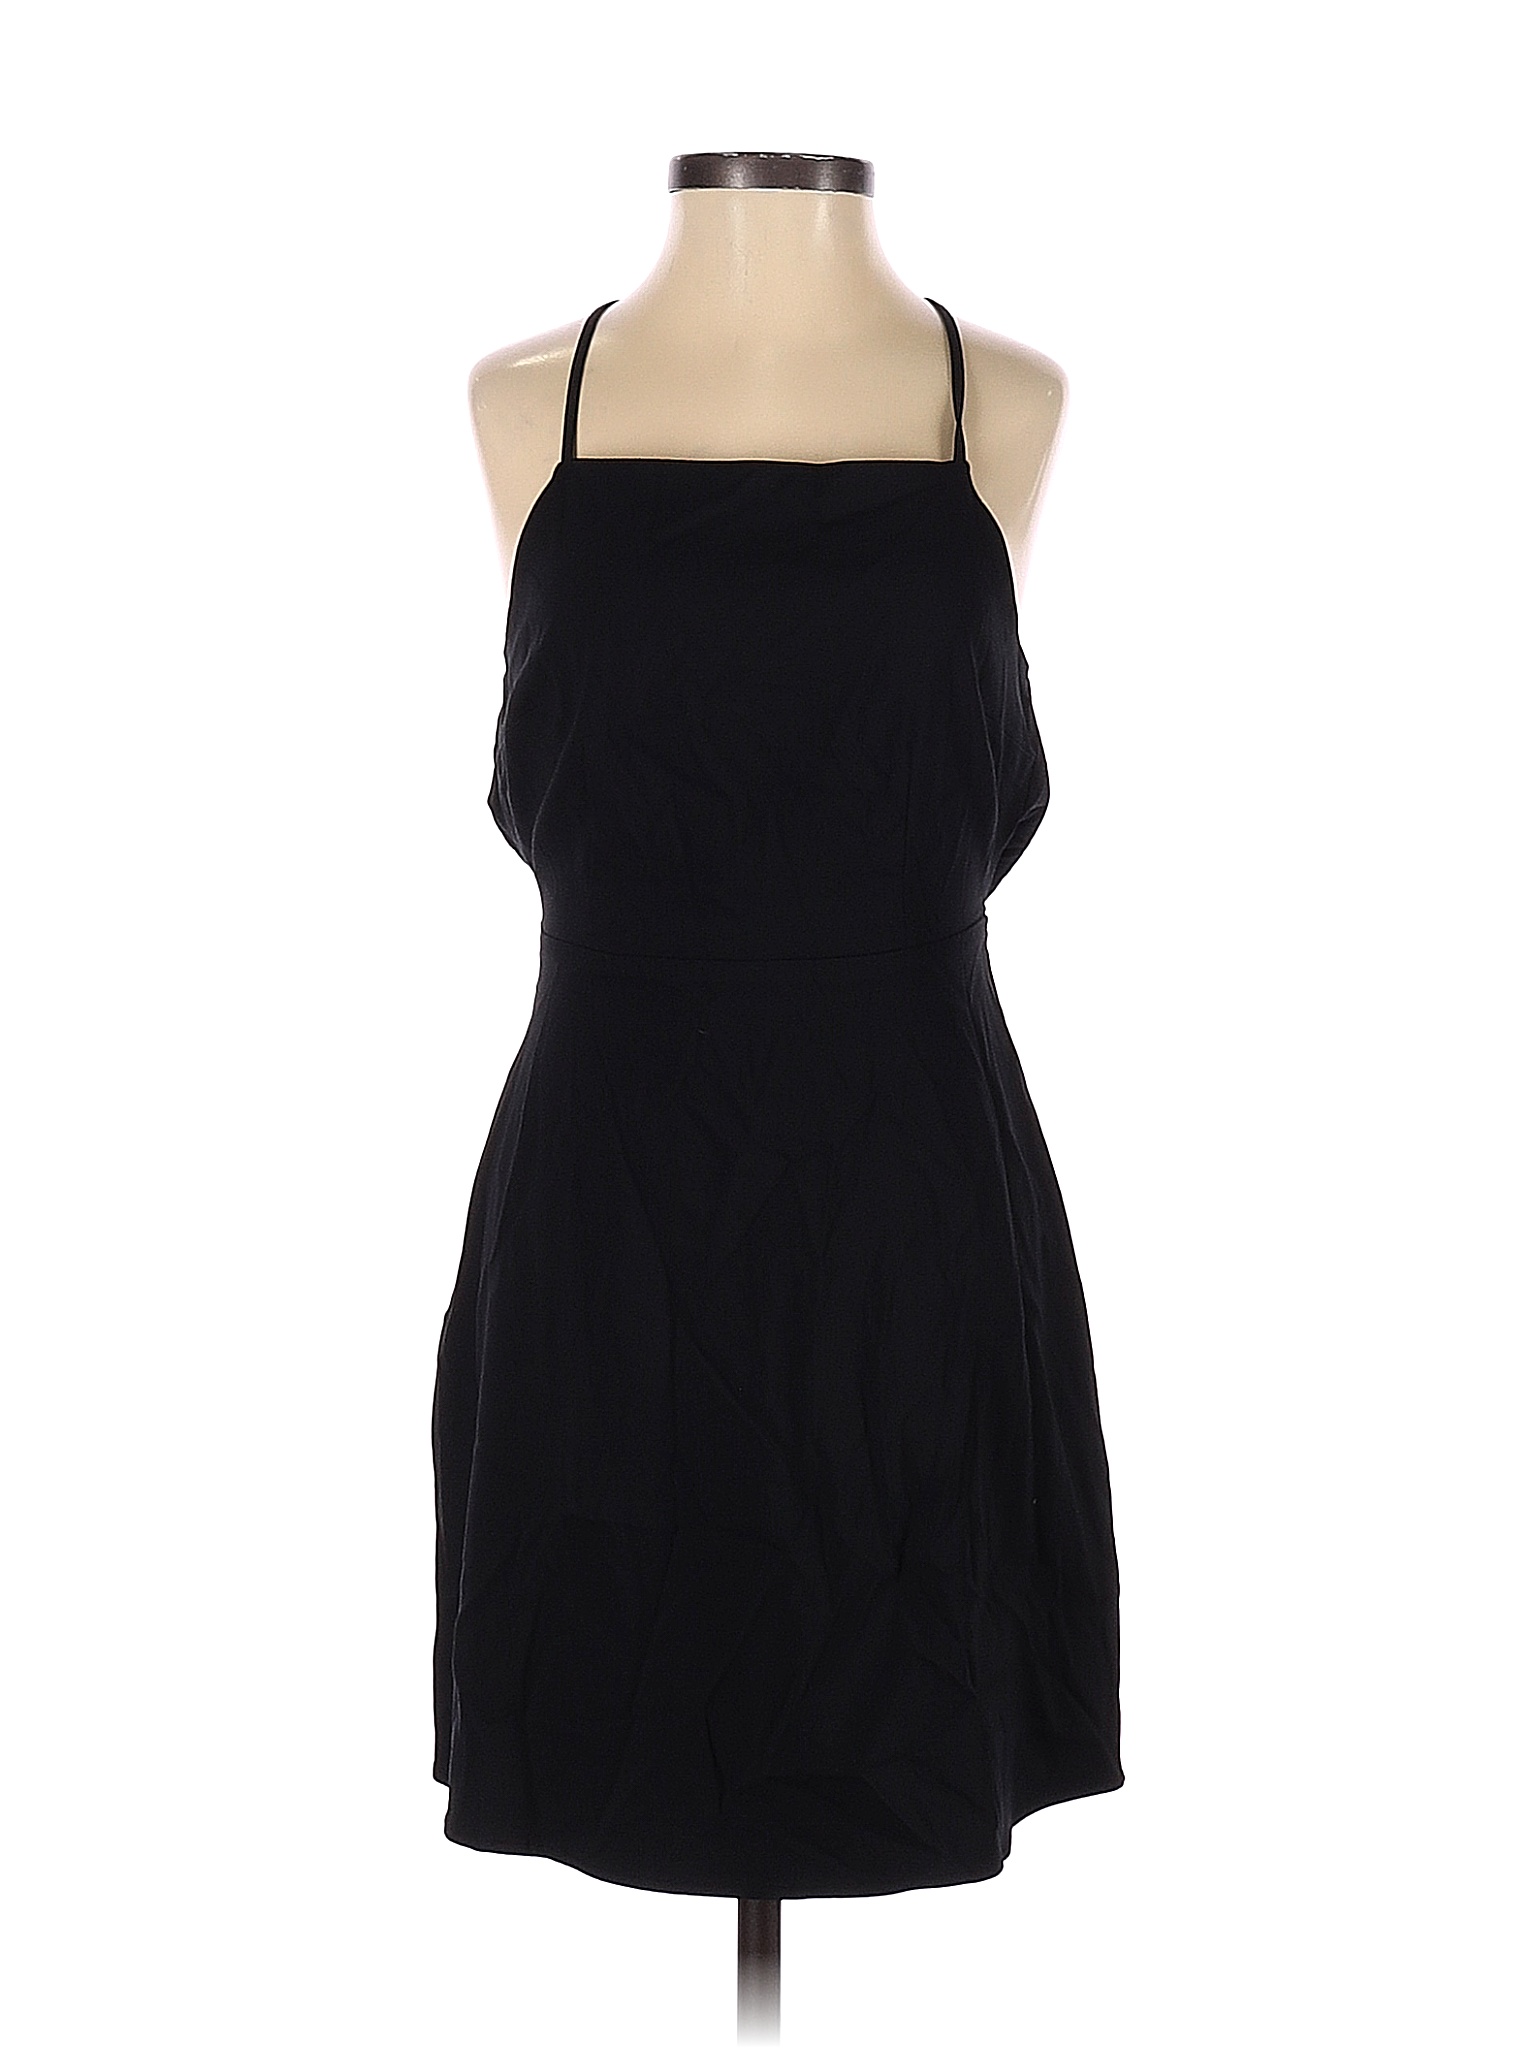 Forever 21 Solid Black Cocktail Dress Size S - 66% off | thredUP